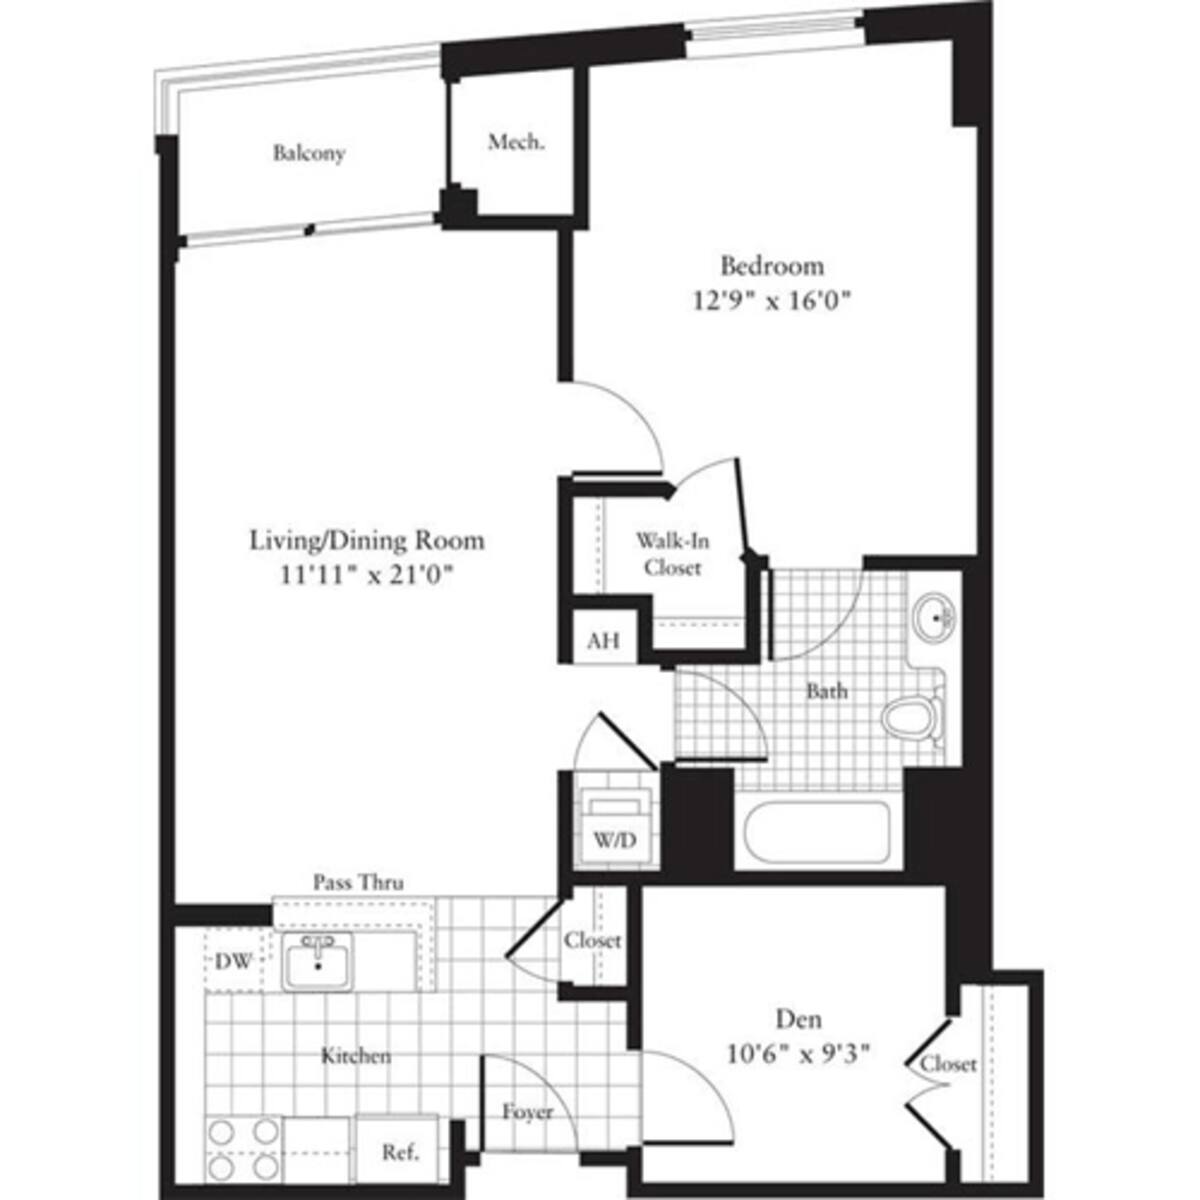 Floorplan diagram for 1 Bedroom L, showing 1 bedroom